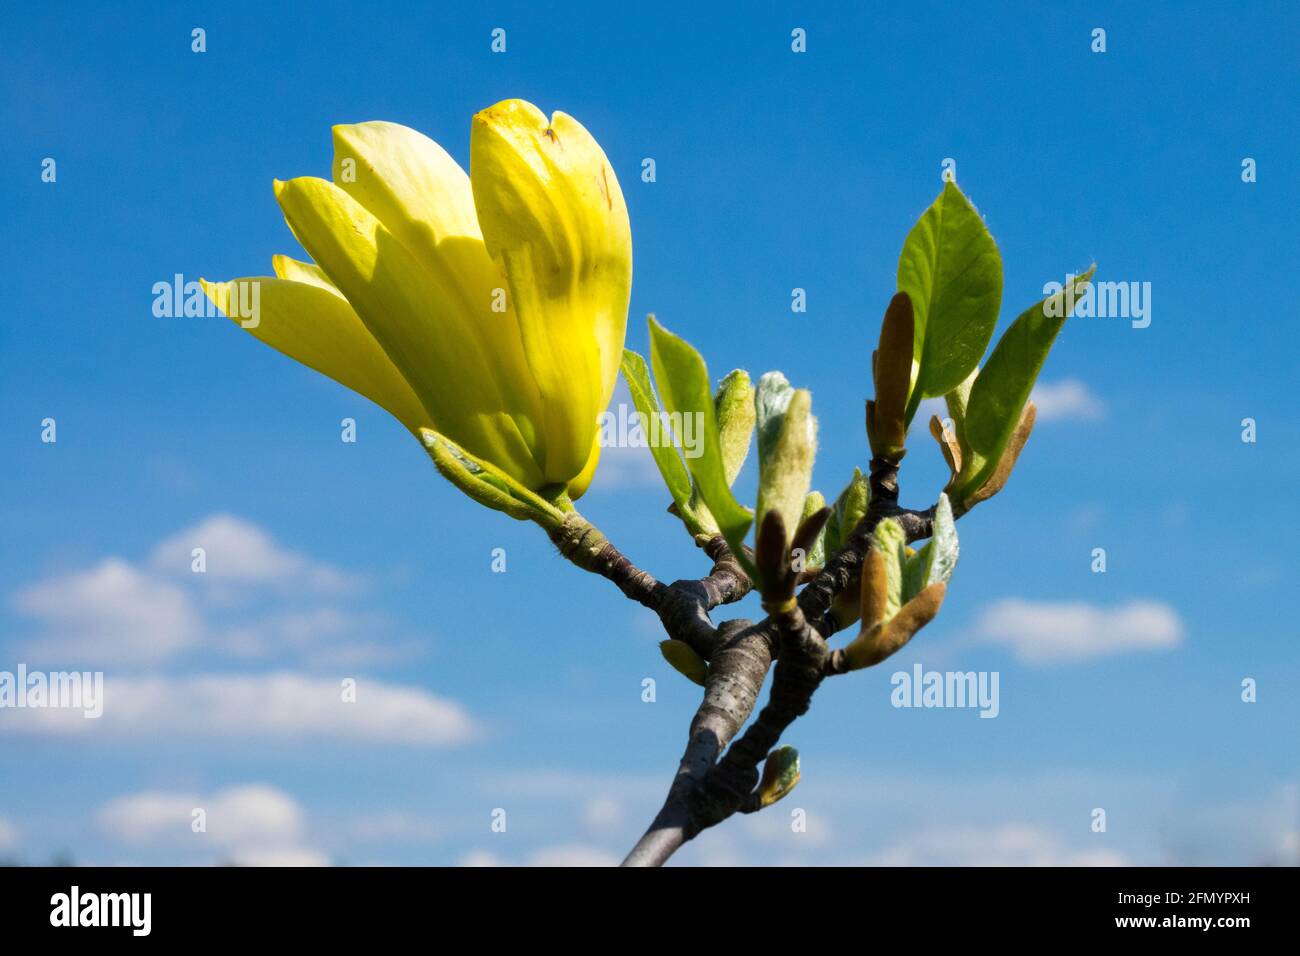 Magnolia 'Yellow Bird' Yellow Magnolia tree blossom new shoots Stock Photo